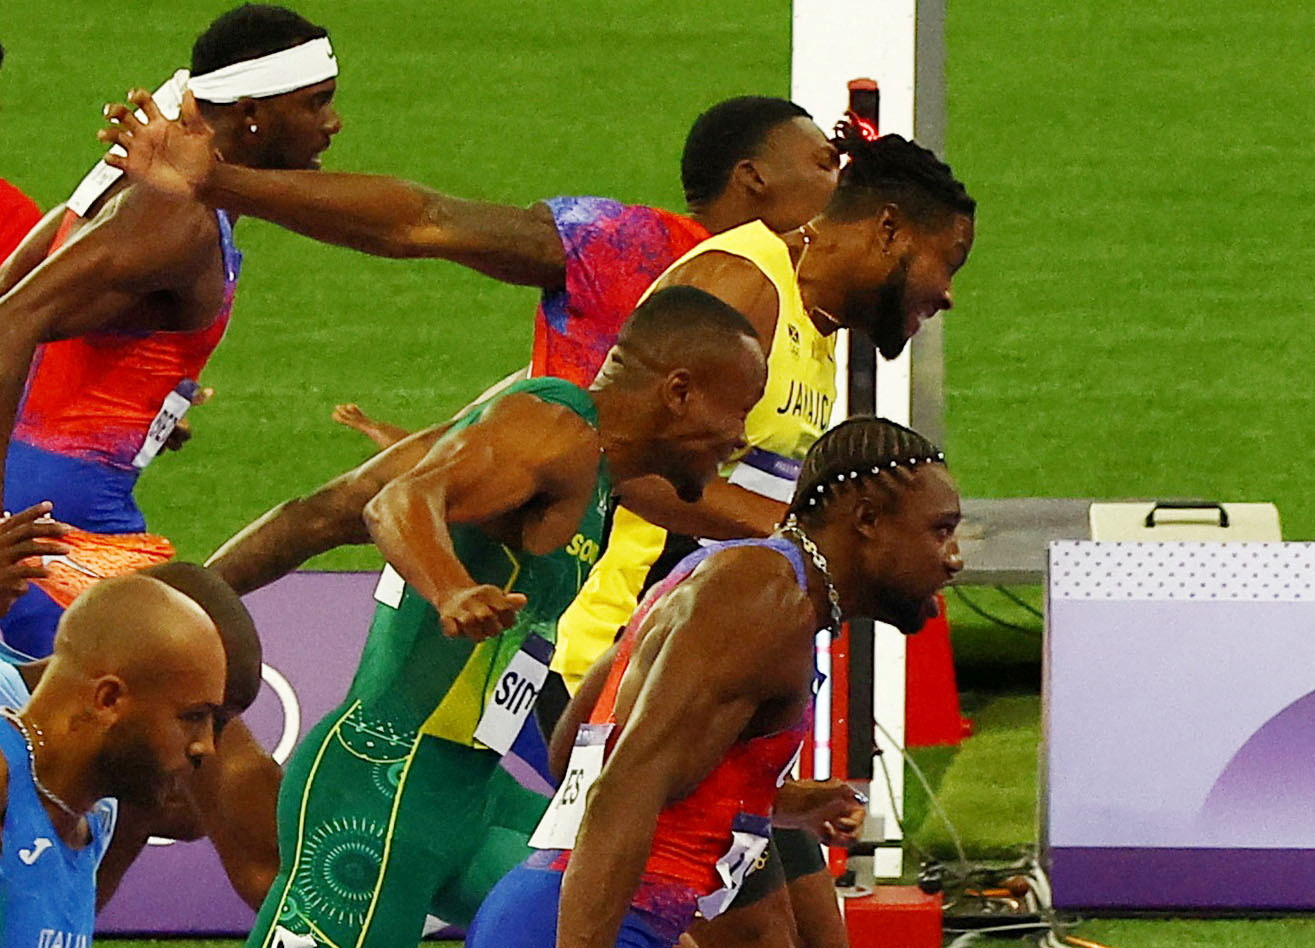 Ολυμπιακοί Αγώνες 2024: Ο λόγος που ο Λάιλς νίκησε στα 100μ. παρότι το πόδι του Τόμσον πέρασε πρώτο την γραμμή